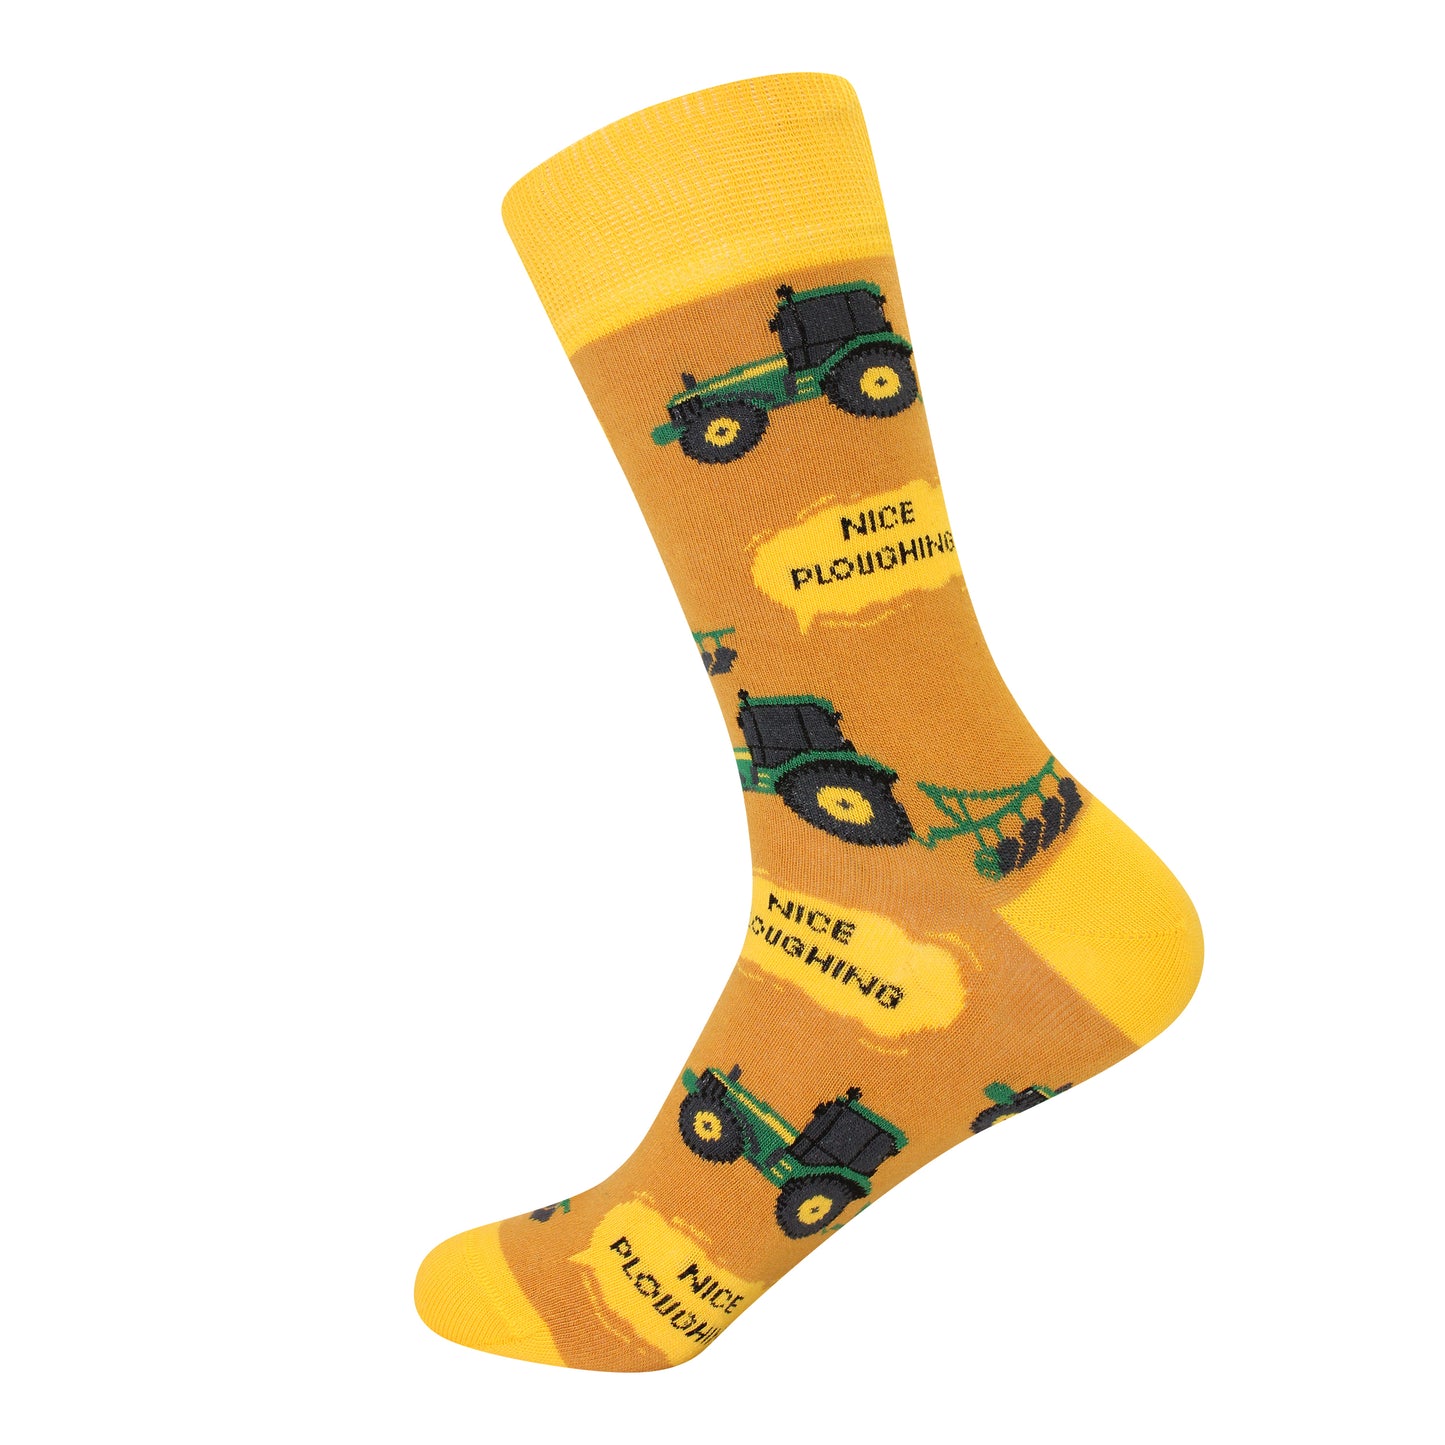 'Nice Ploughing' Socks